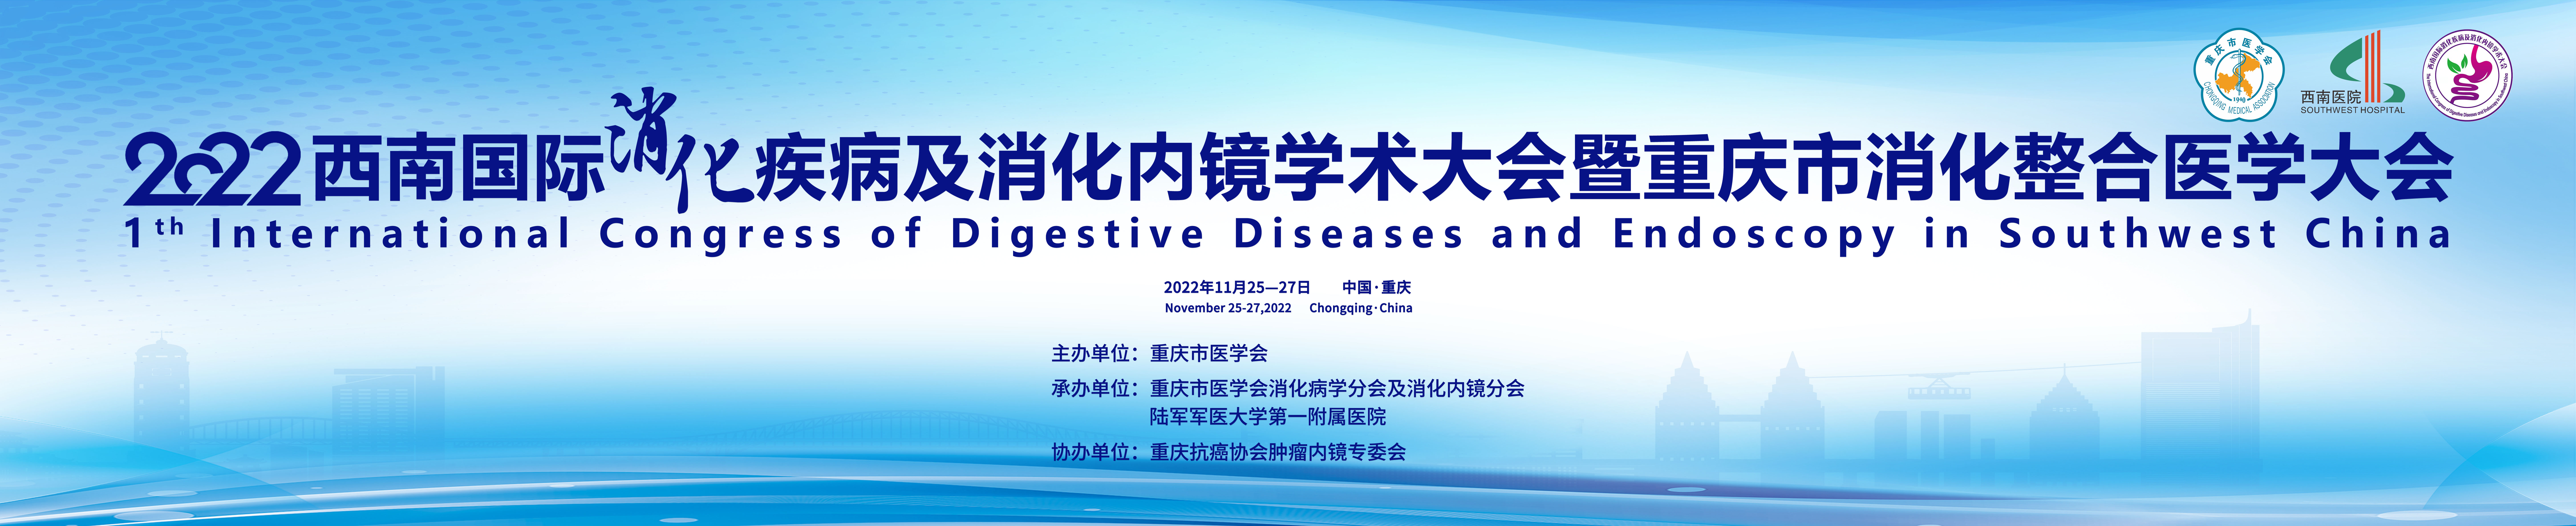 2022西南国际消化疾病及消化内镜学术大会暨重庆市消化整合医学大会